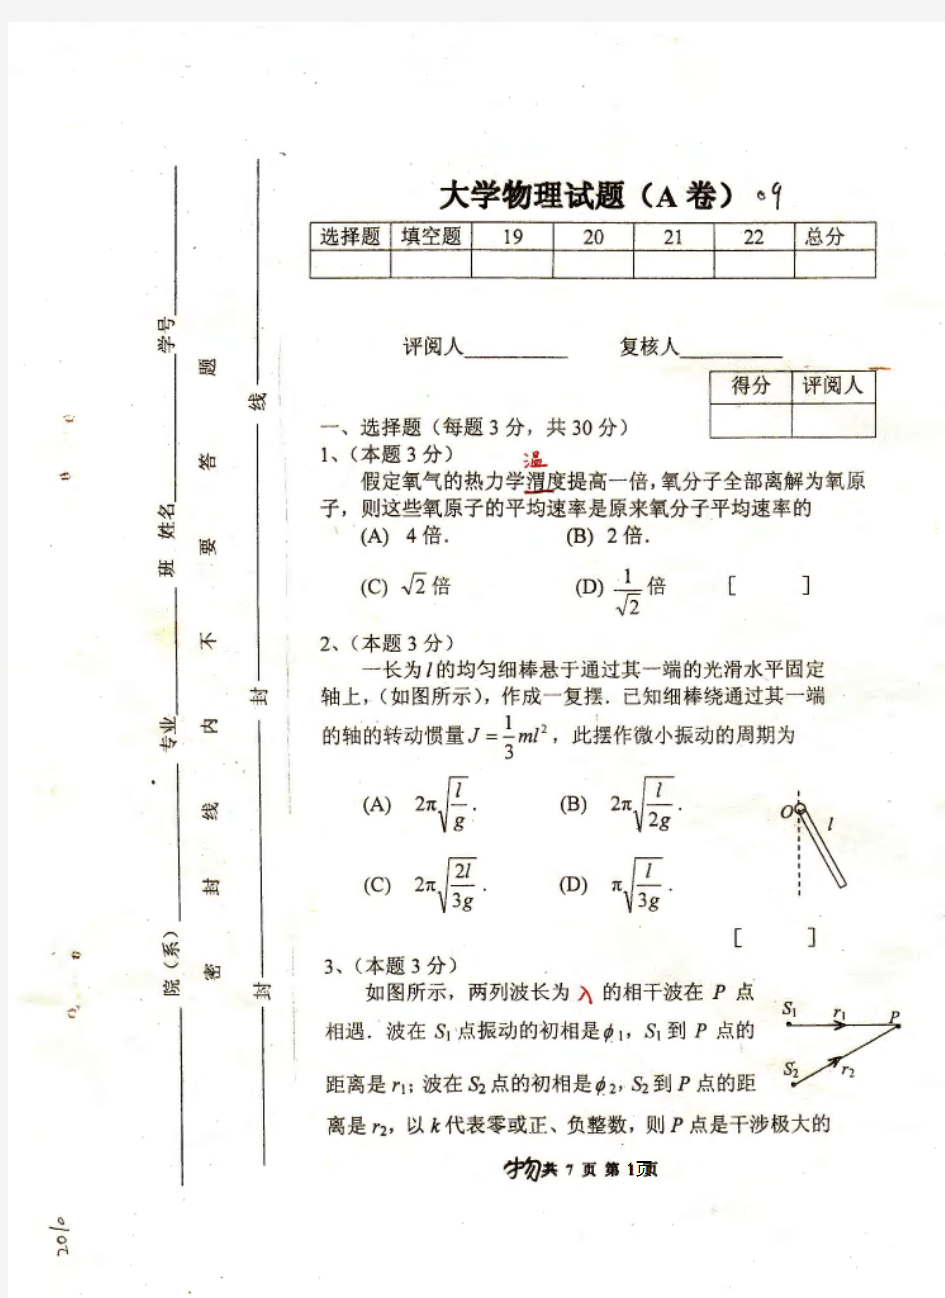 大学物理(II)A2009  物理学 马文蔚 郑州大学